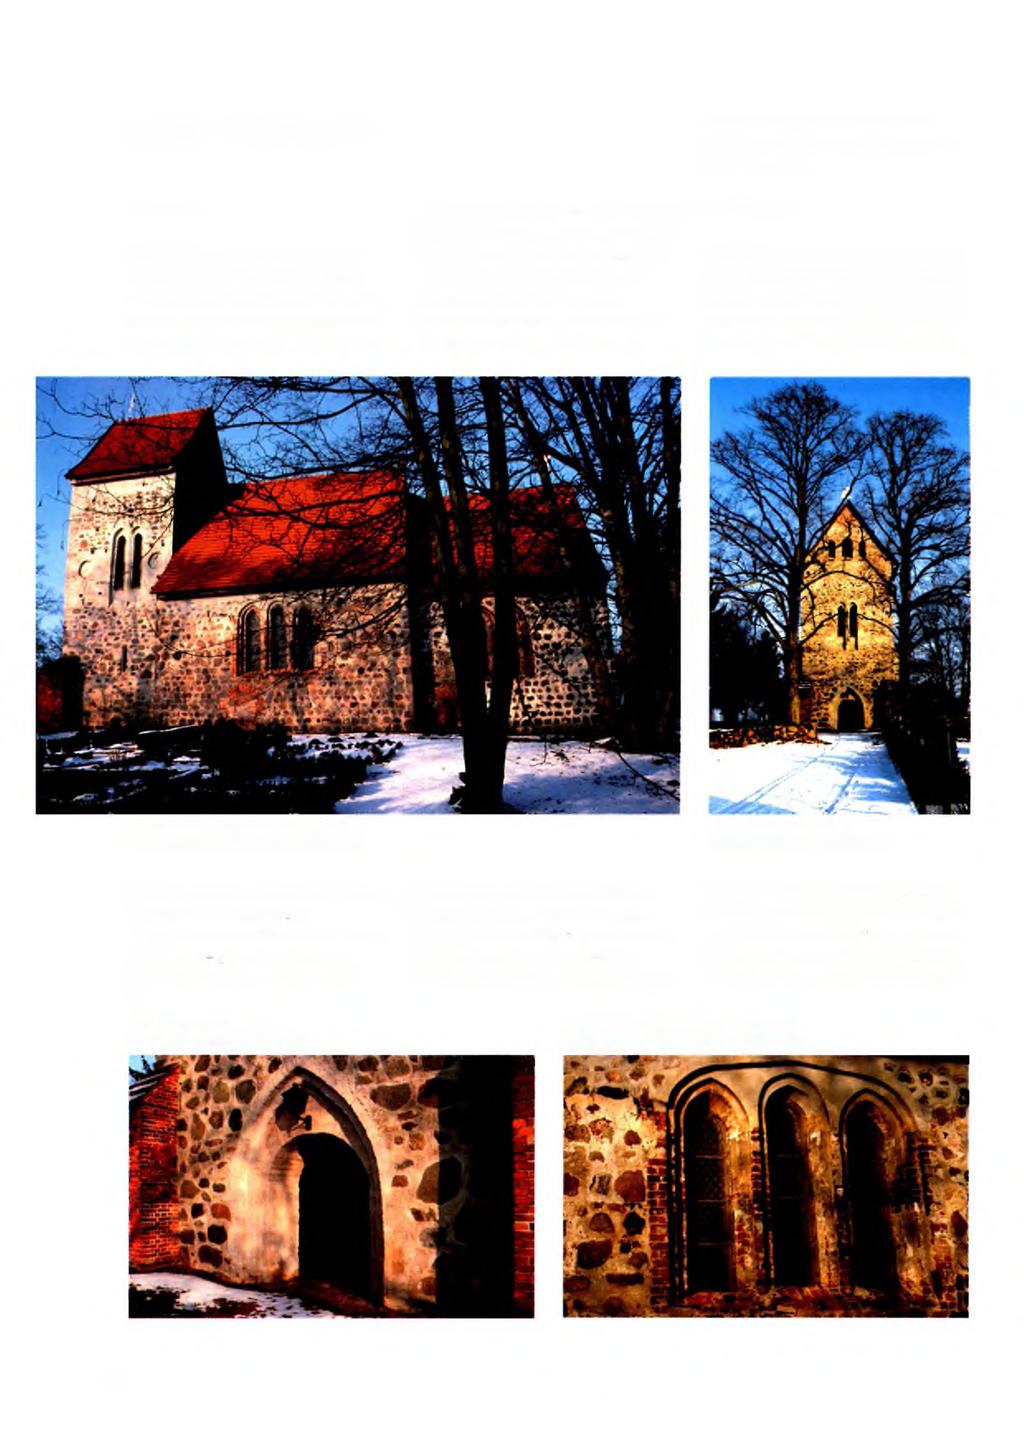 5.26 Woserin Das Dorf Malerisch liegt Woserin mit seiner Feldsteinkirche am gleichnamigen See. Der slawische Name könnte auf eine durch Brandrodung gewonnene Ansiedlung hinweisen.